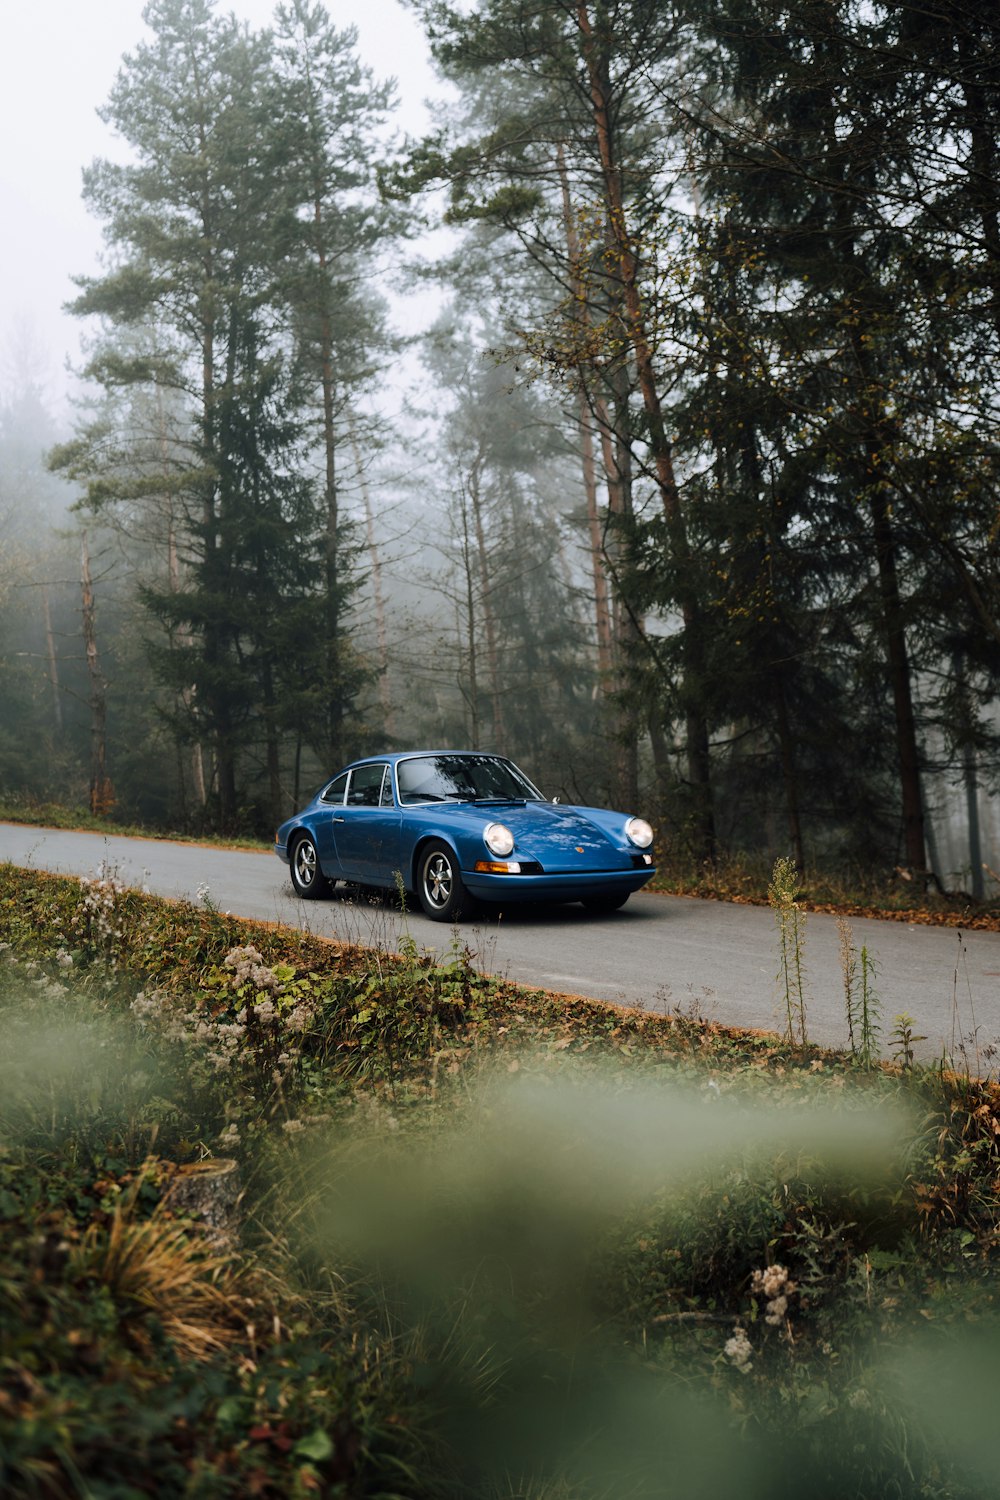 berline bleue sur la route entourée d’arbres